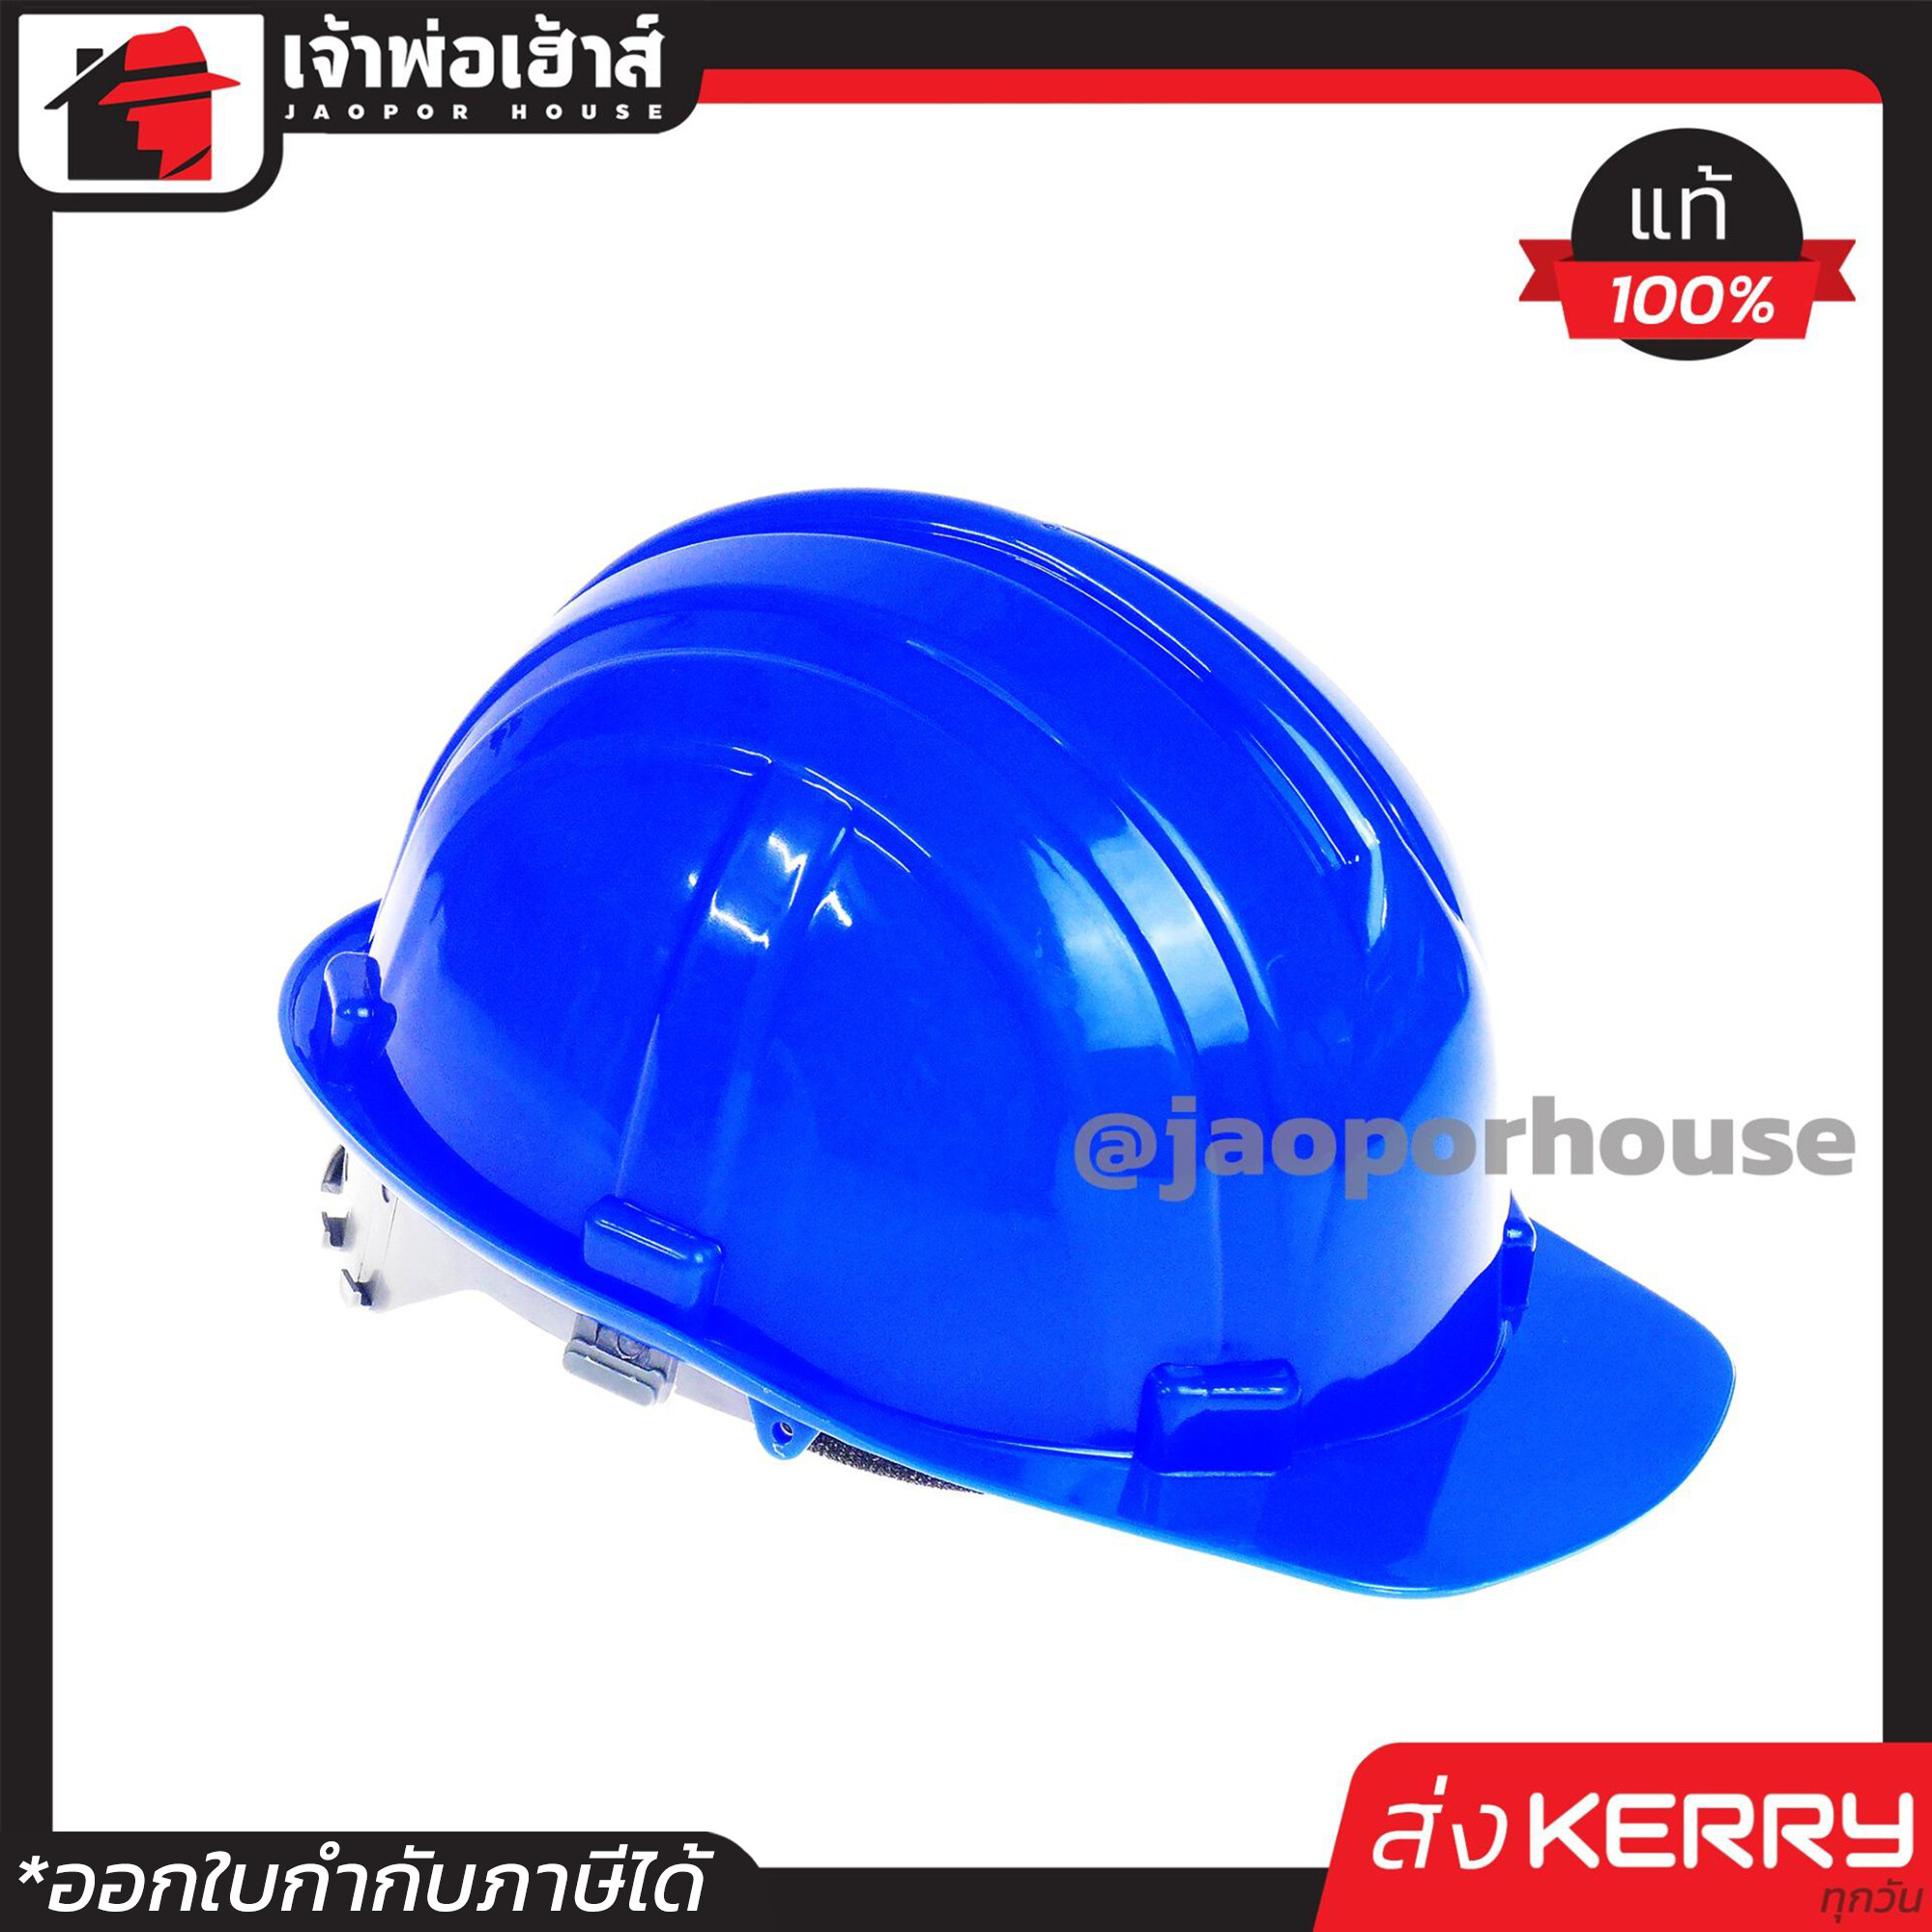 ⚡ส่งLex⚡ หมวกนิรภัย KP สีน้ำเงิน ขนาด 50-65 cm. น้ำหนักเบาใส่สบาย หมวกเซฟตี้ หมวกวิศวะกร หมวกวิศวะ Safety Helmet